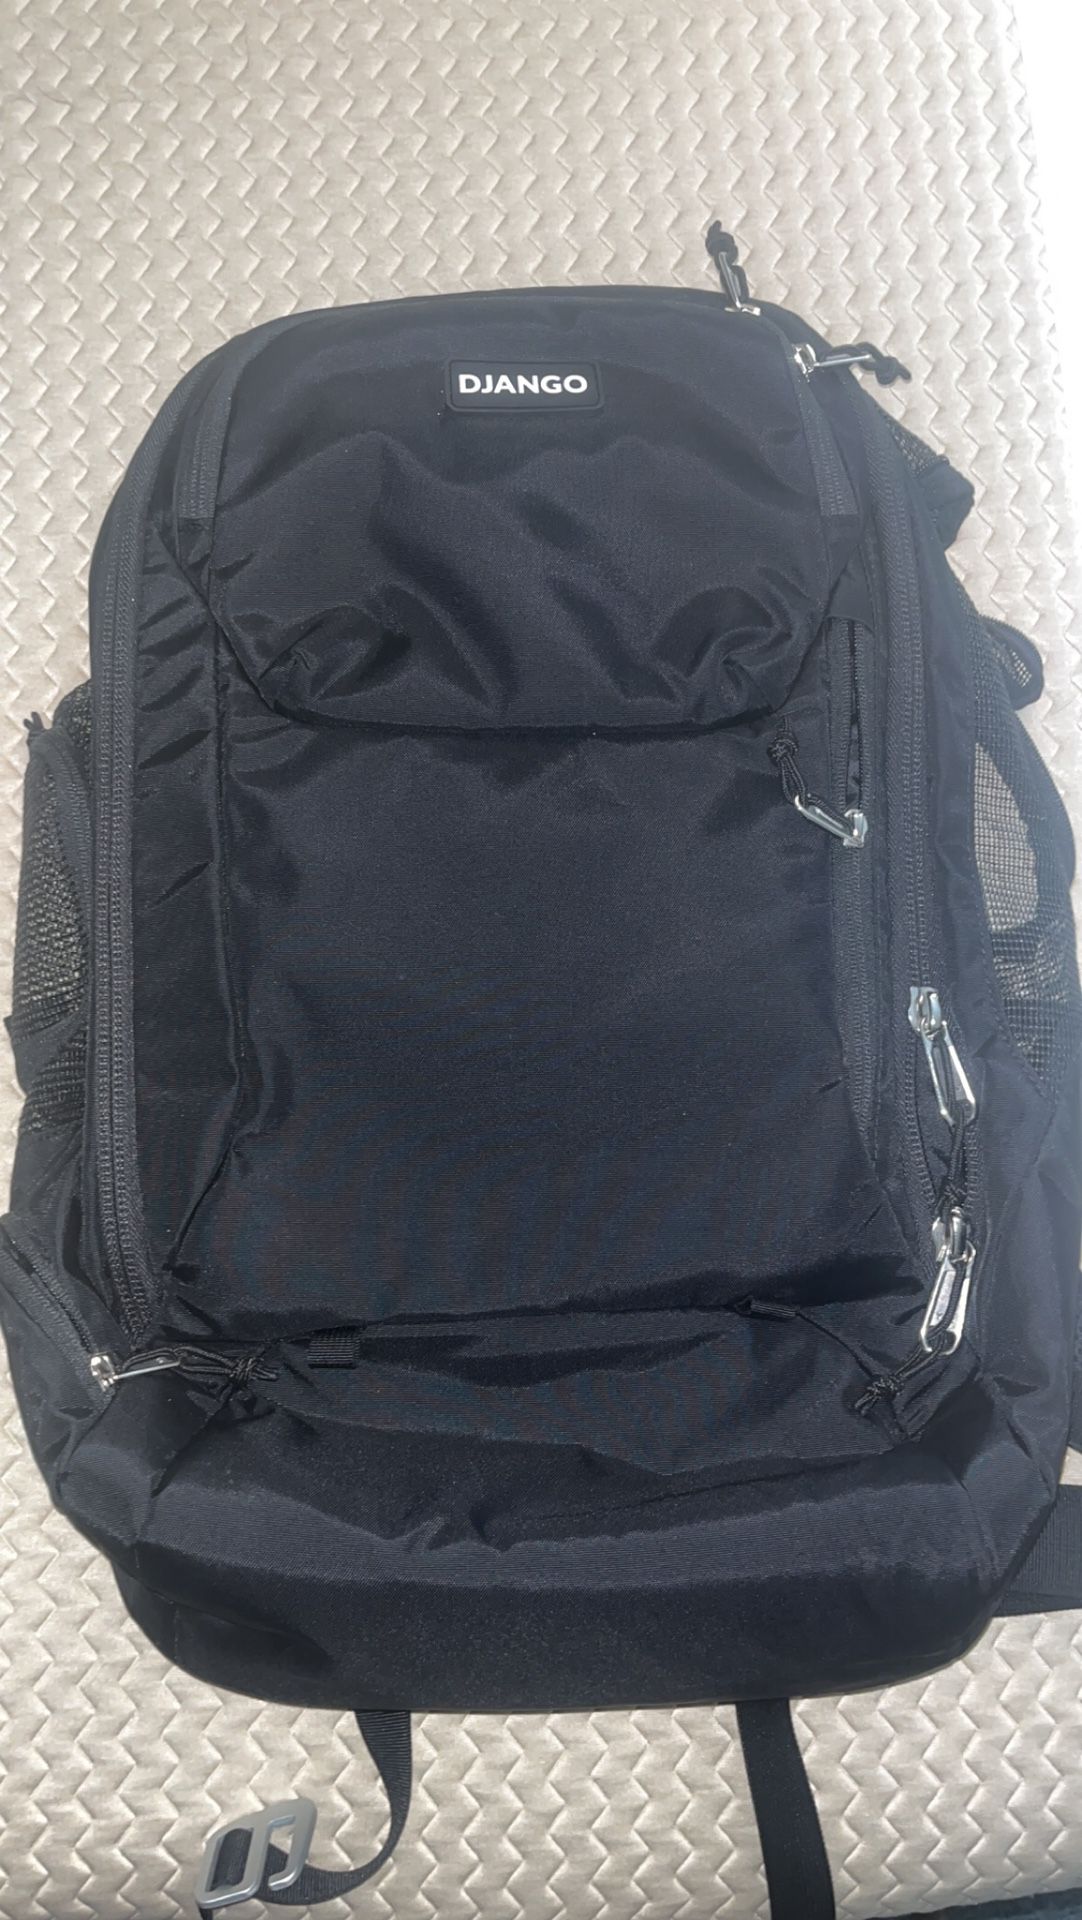 Django backpack